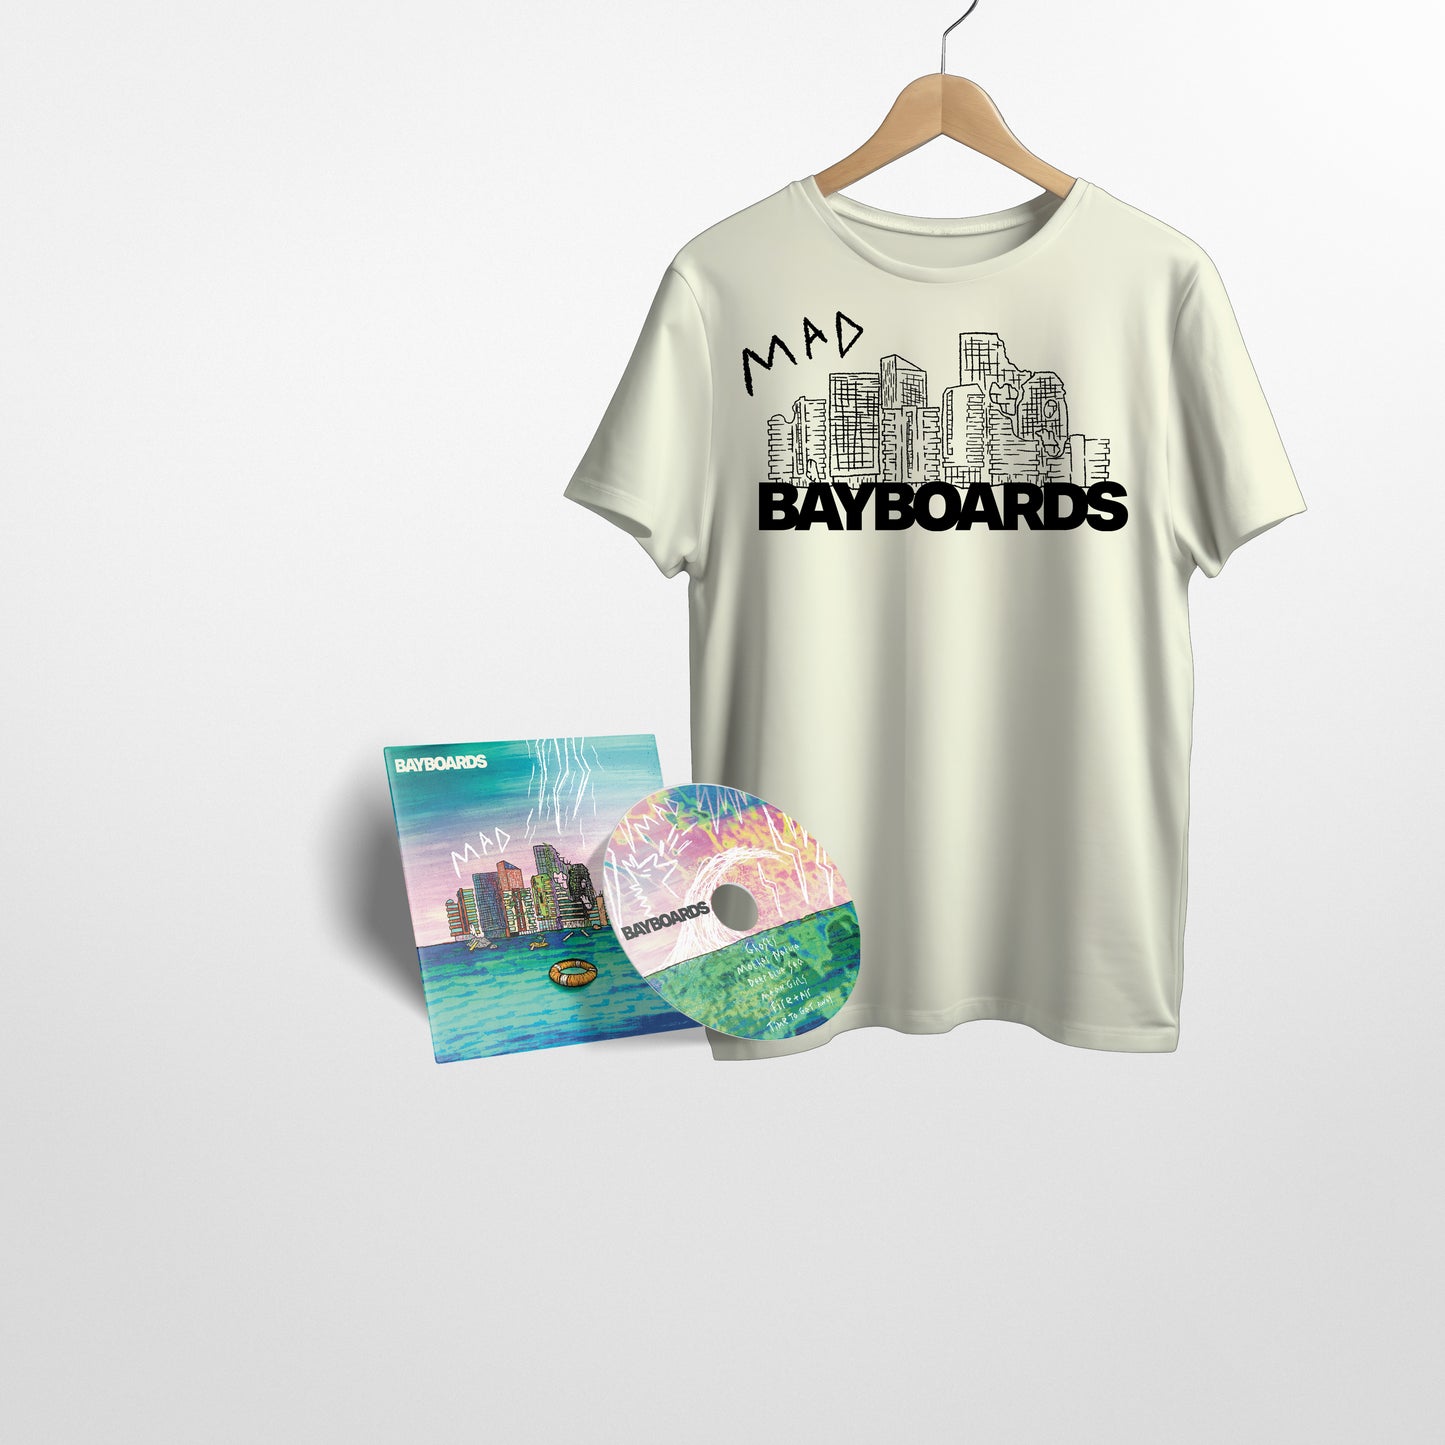 Bayboards - 'Modern Age Disaster' EP - Bundle - CD + T-Shirt